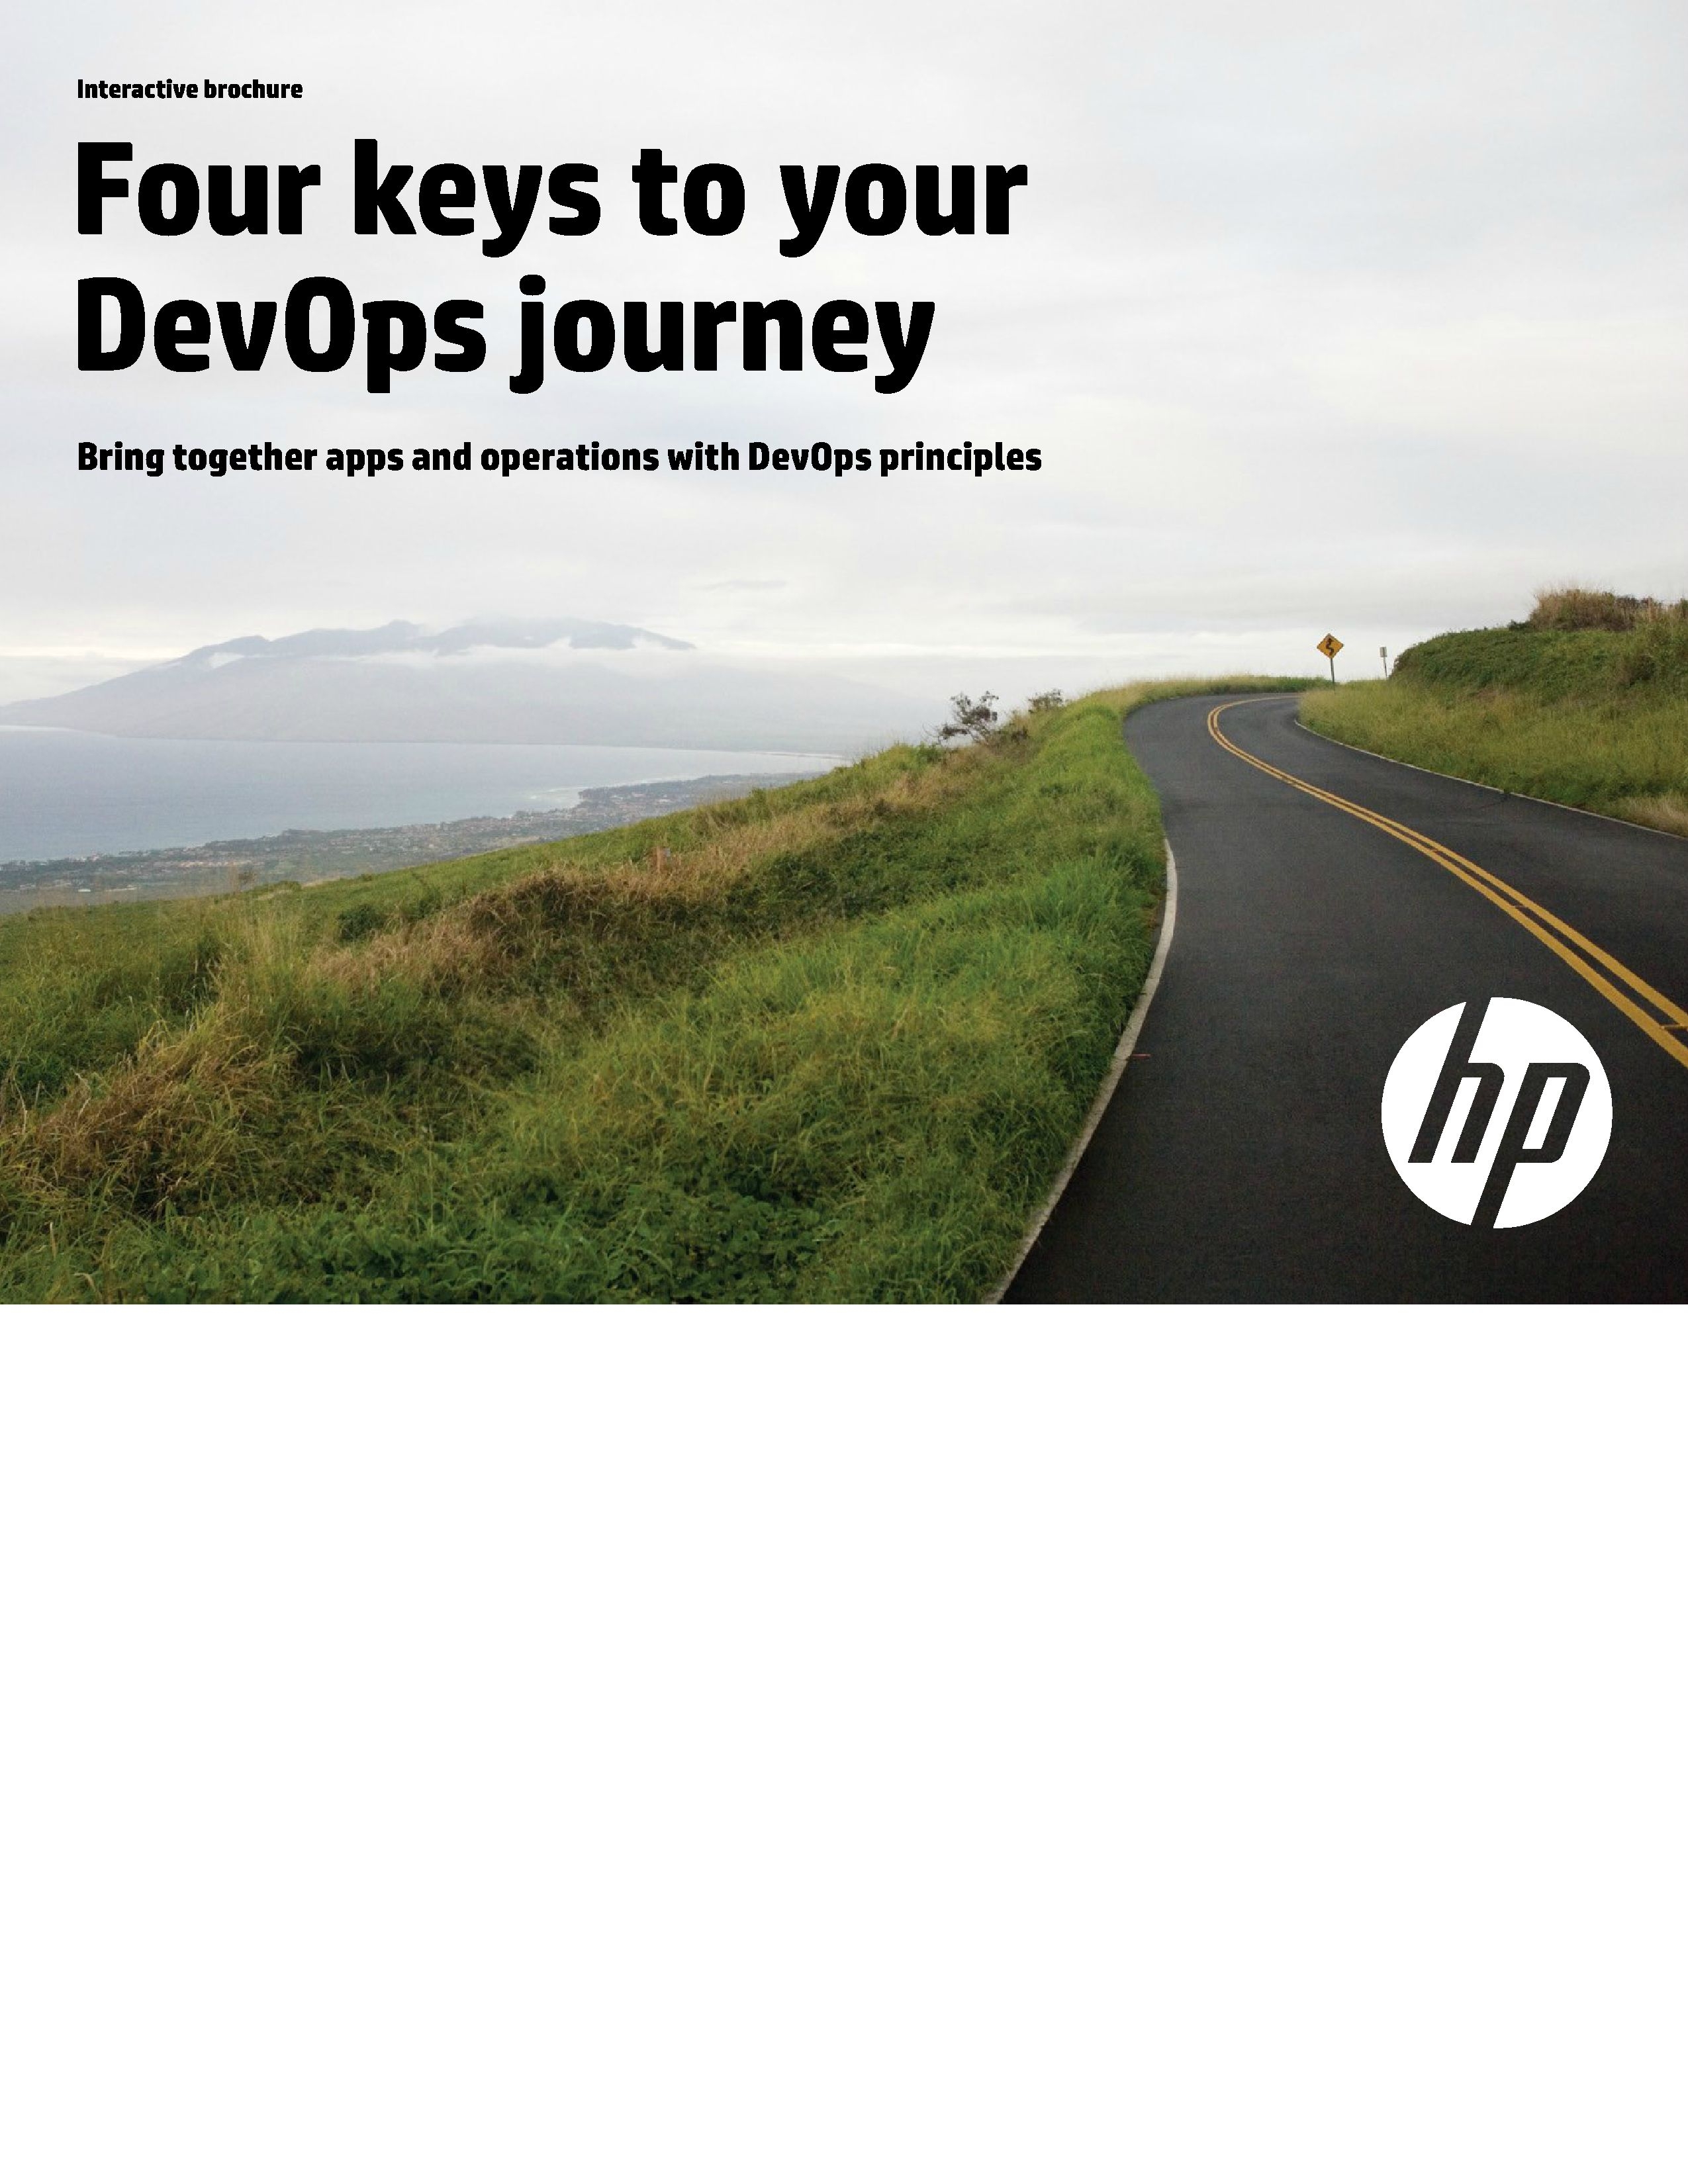 HPE - Four keys for your DevOps Journey